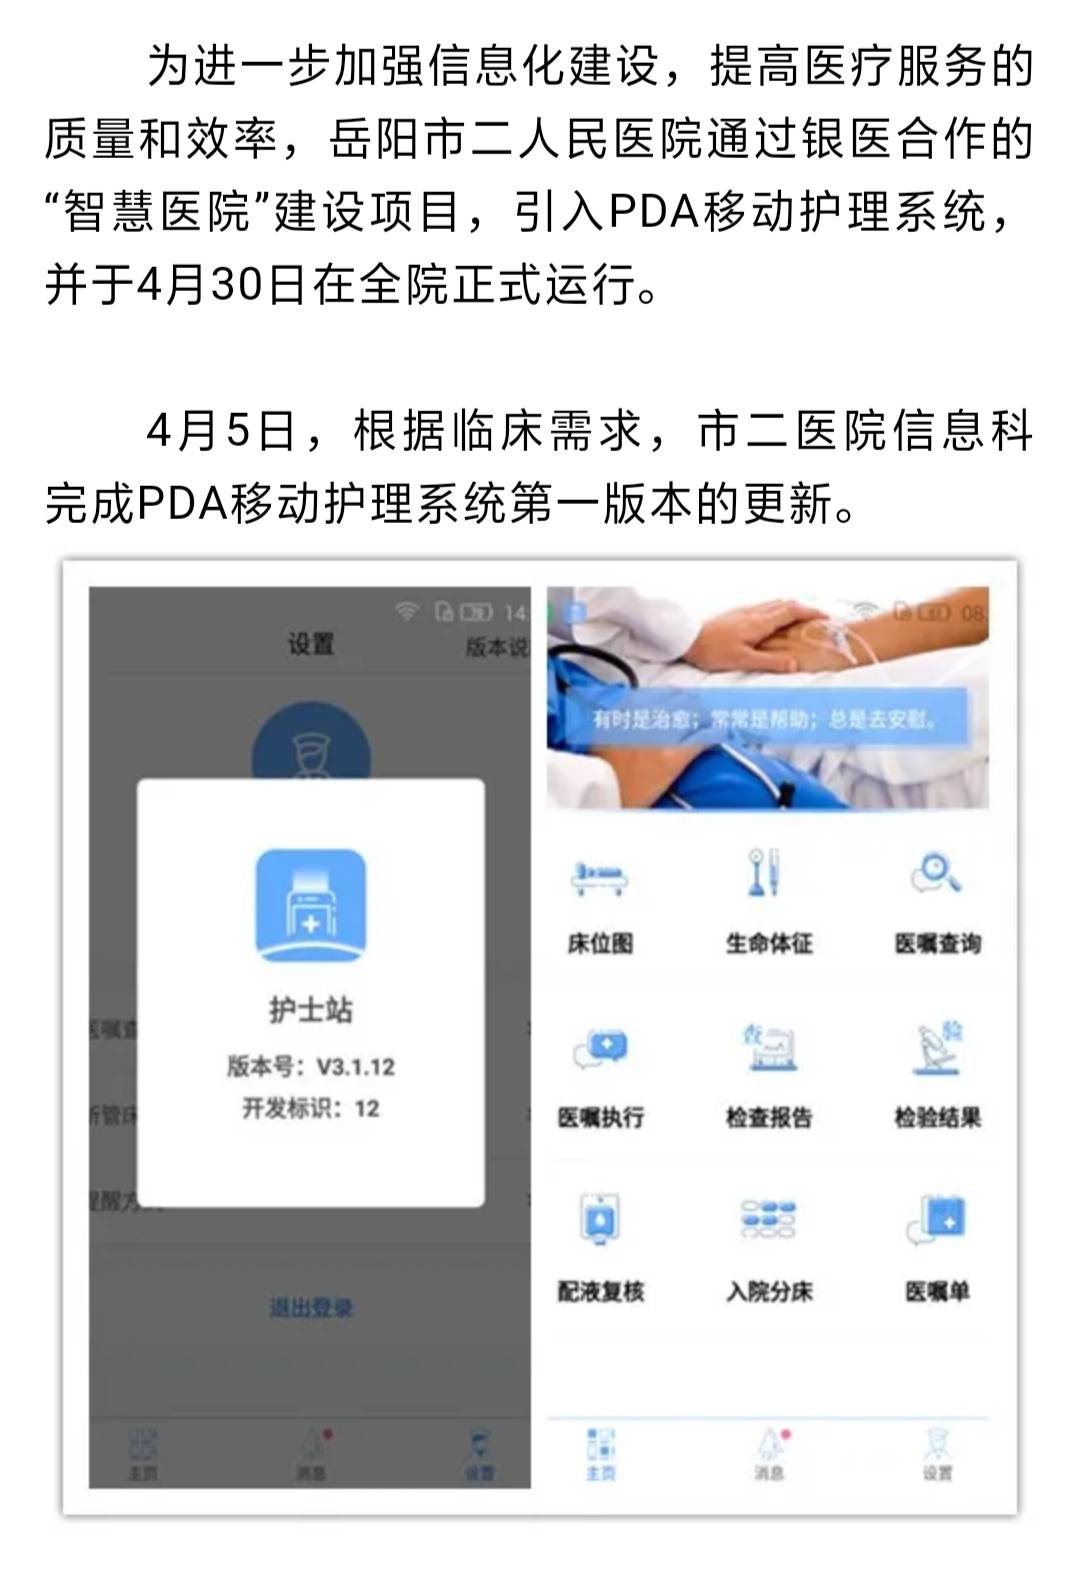 智慧医院 建设之PDA移动护理系统在岳阳市二医院正式上线 